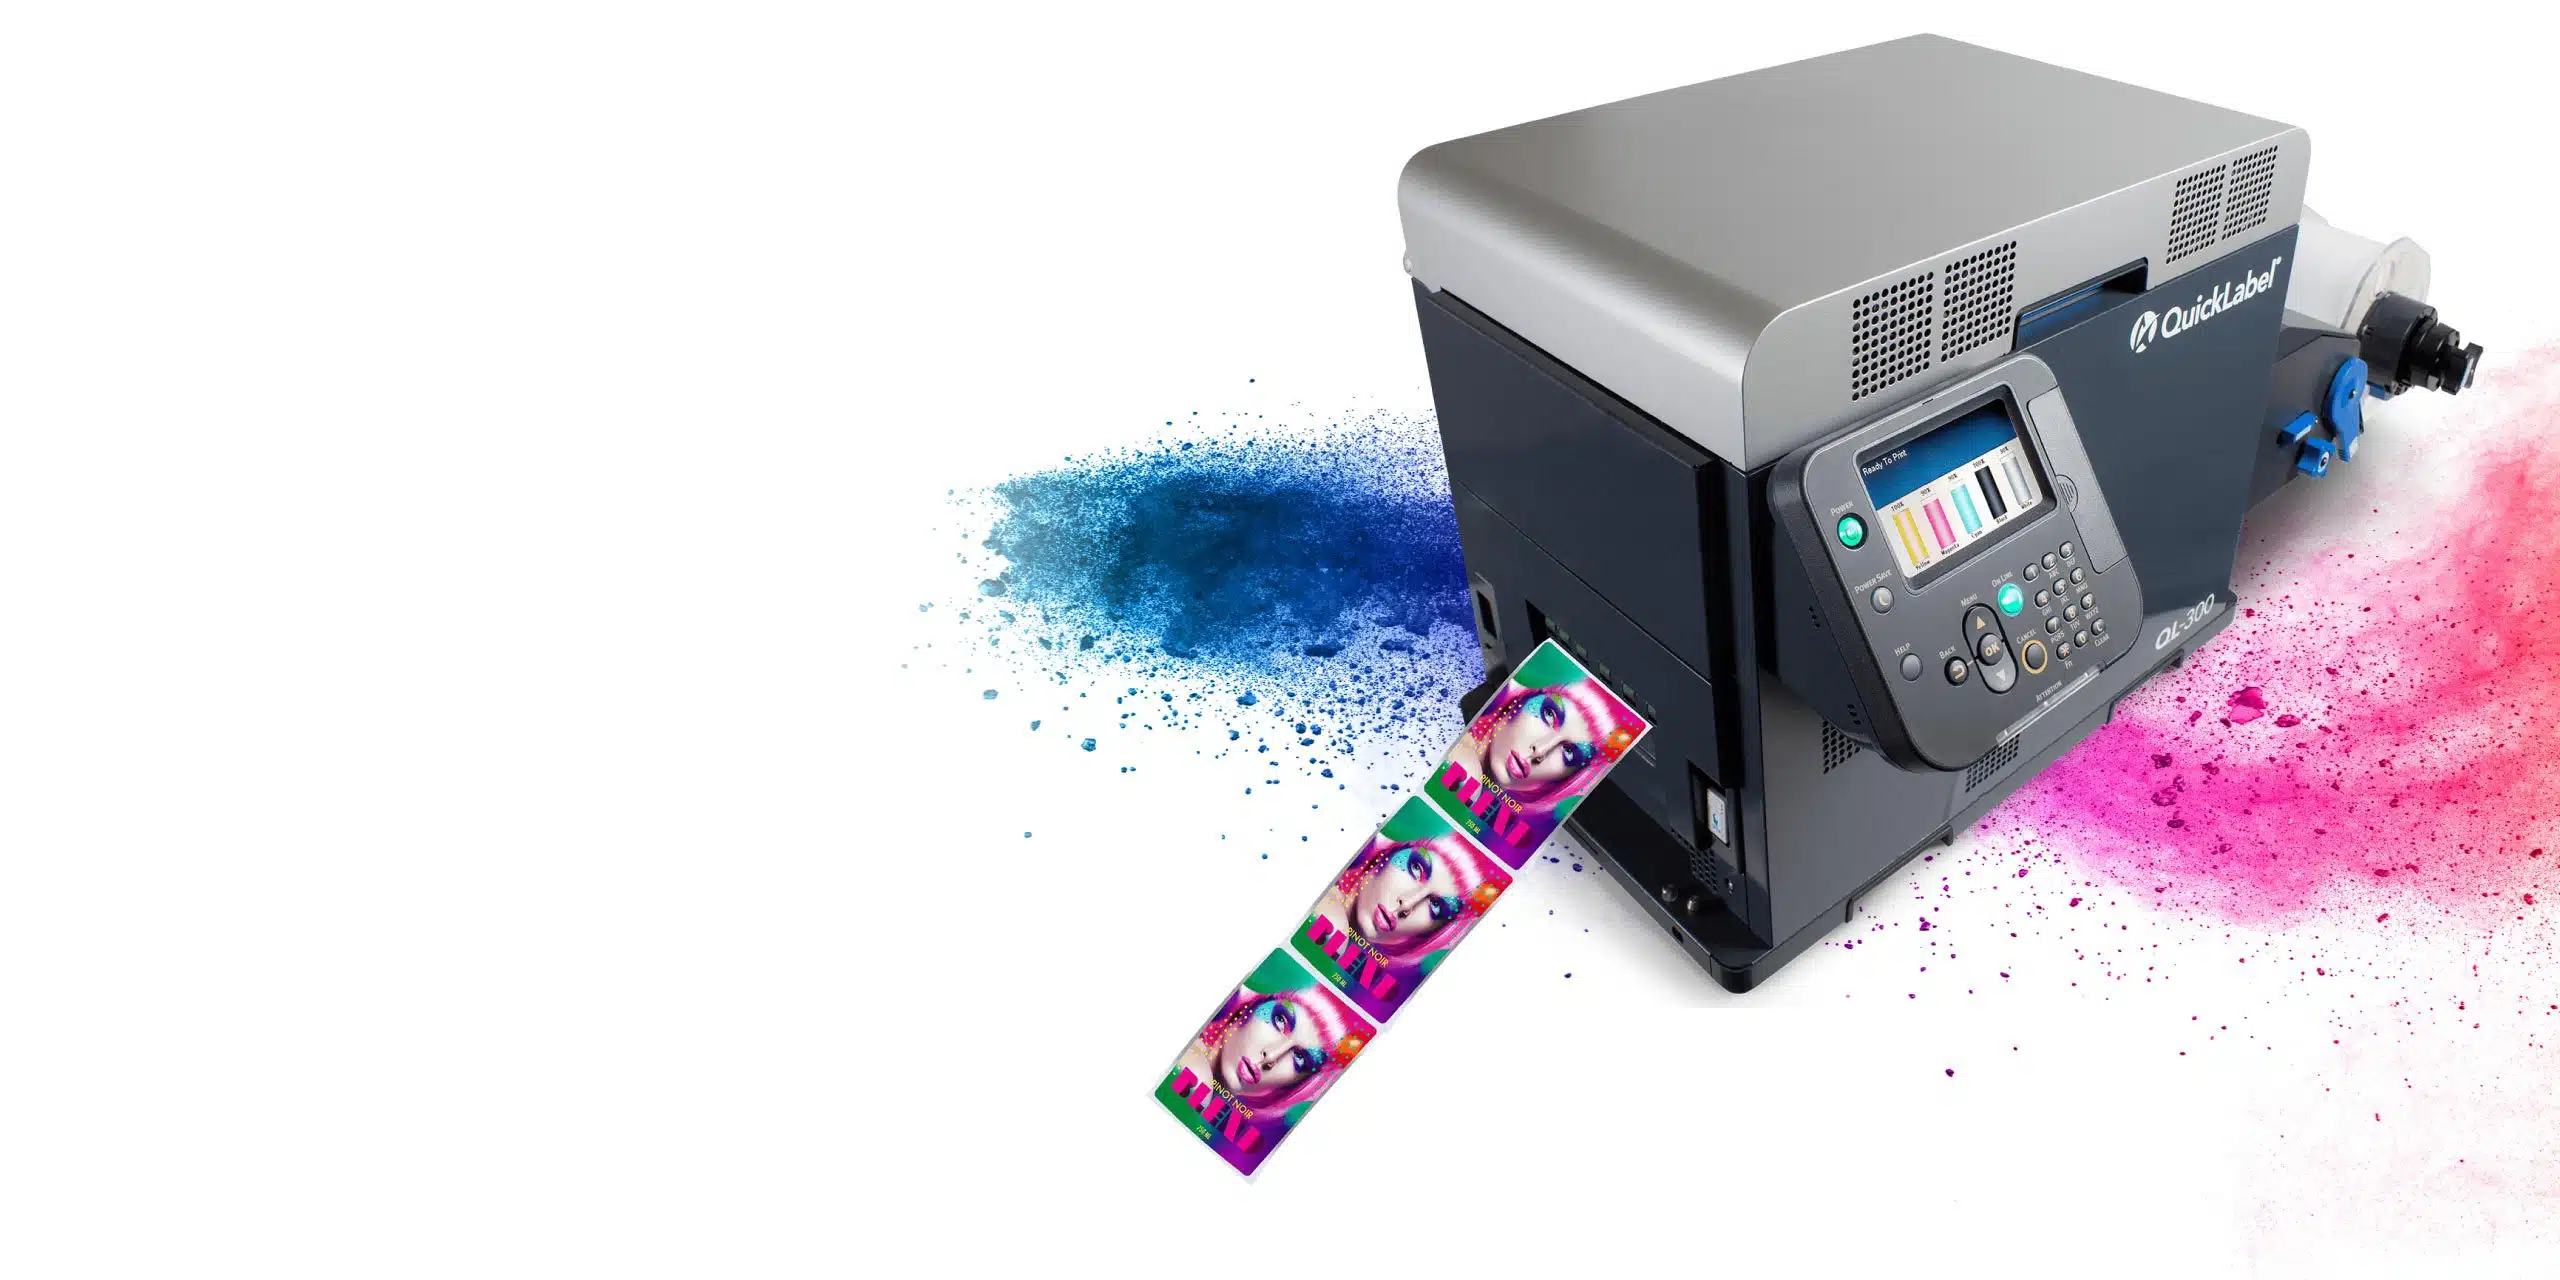 QL-300 Five-Color Label Printer - AstroNova